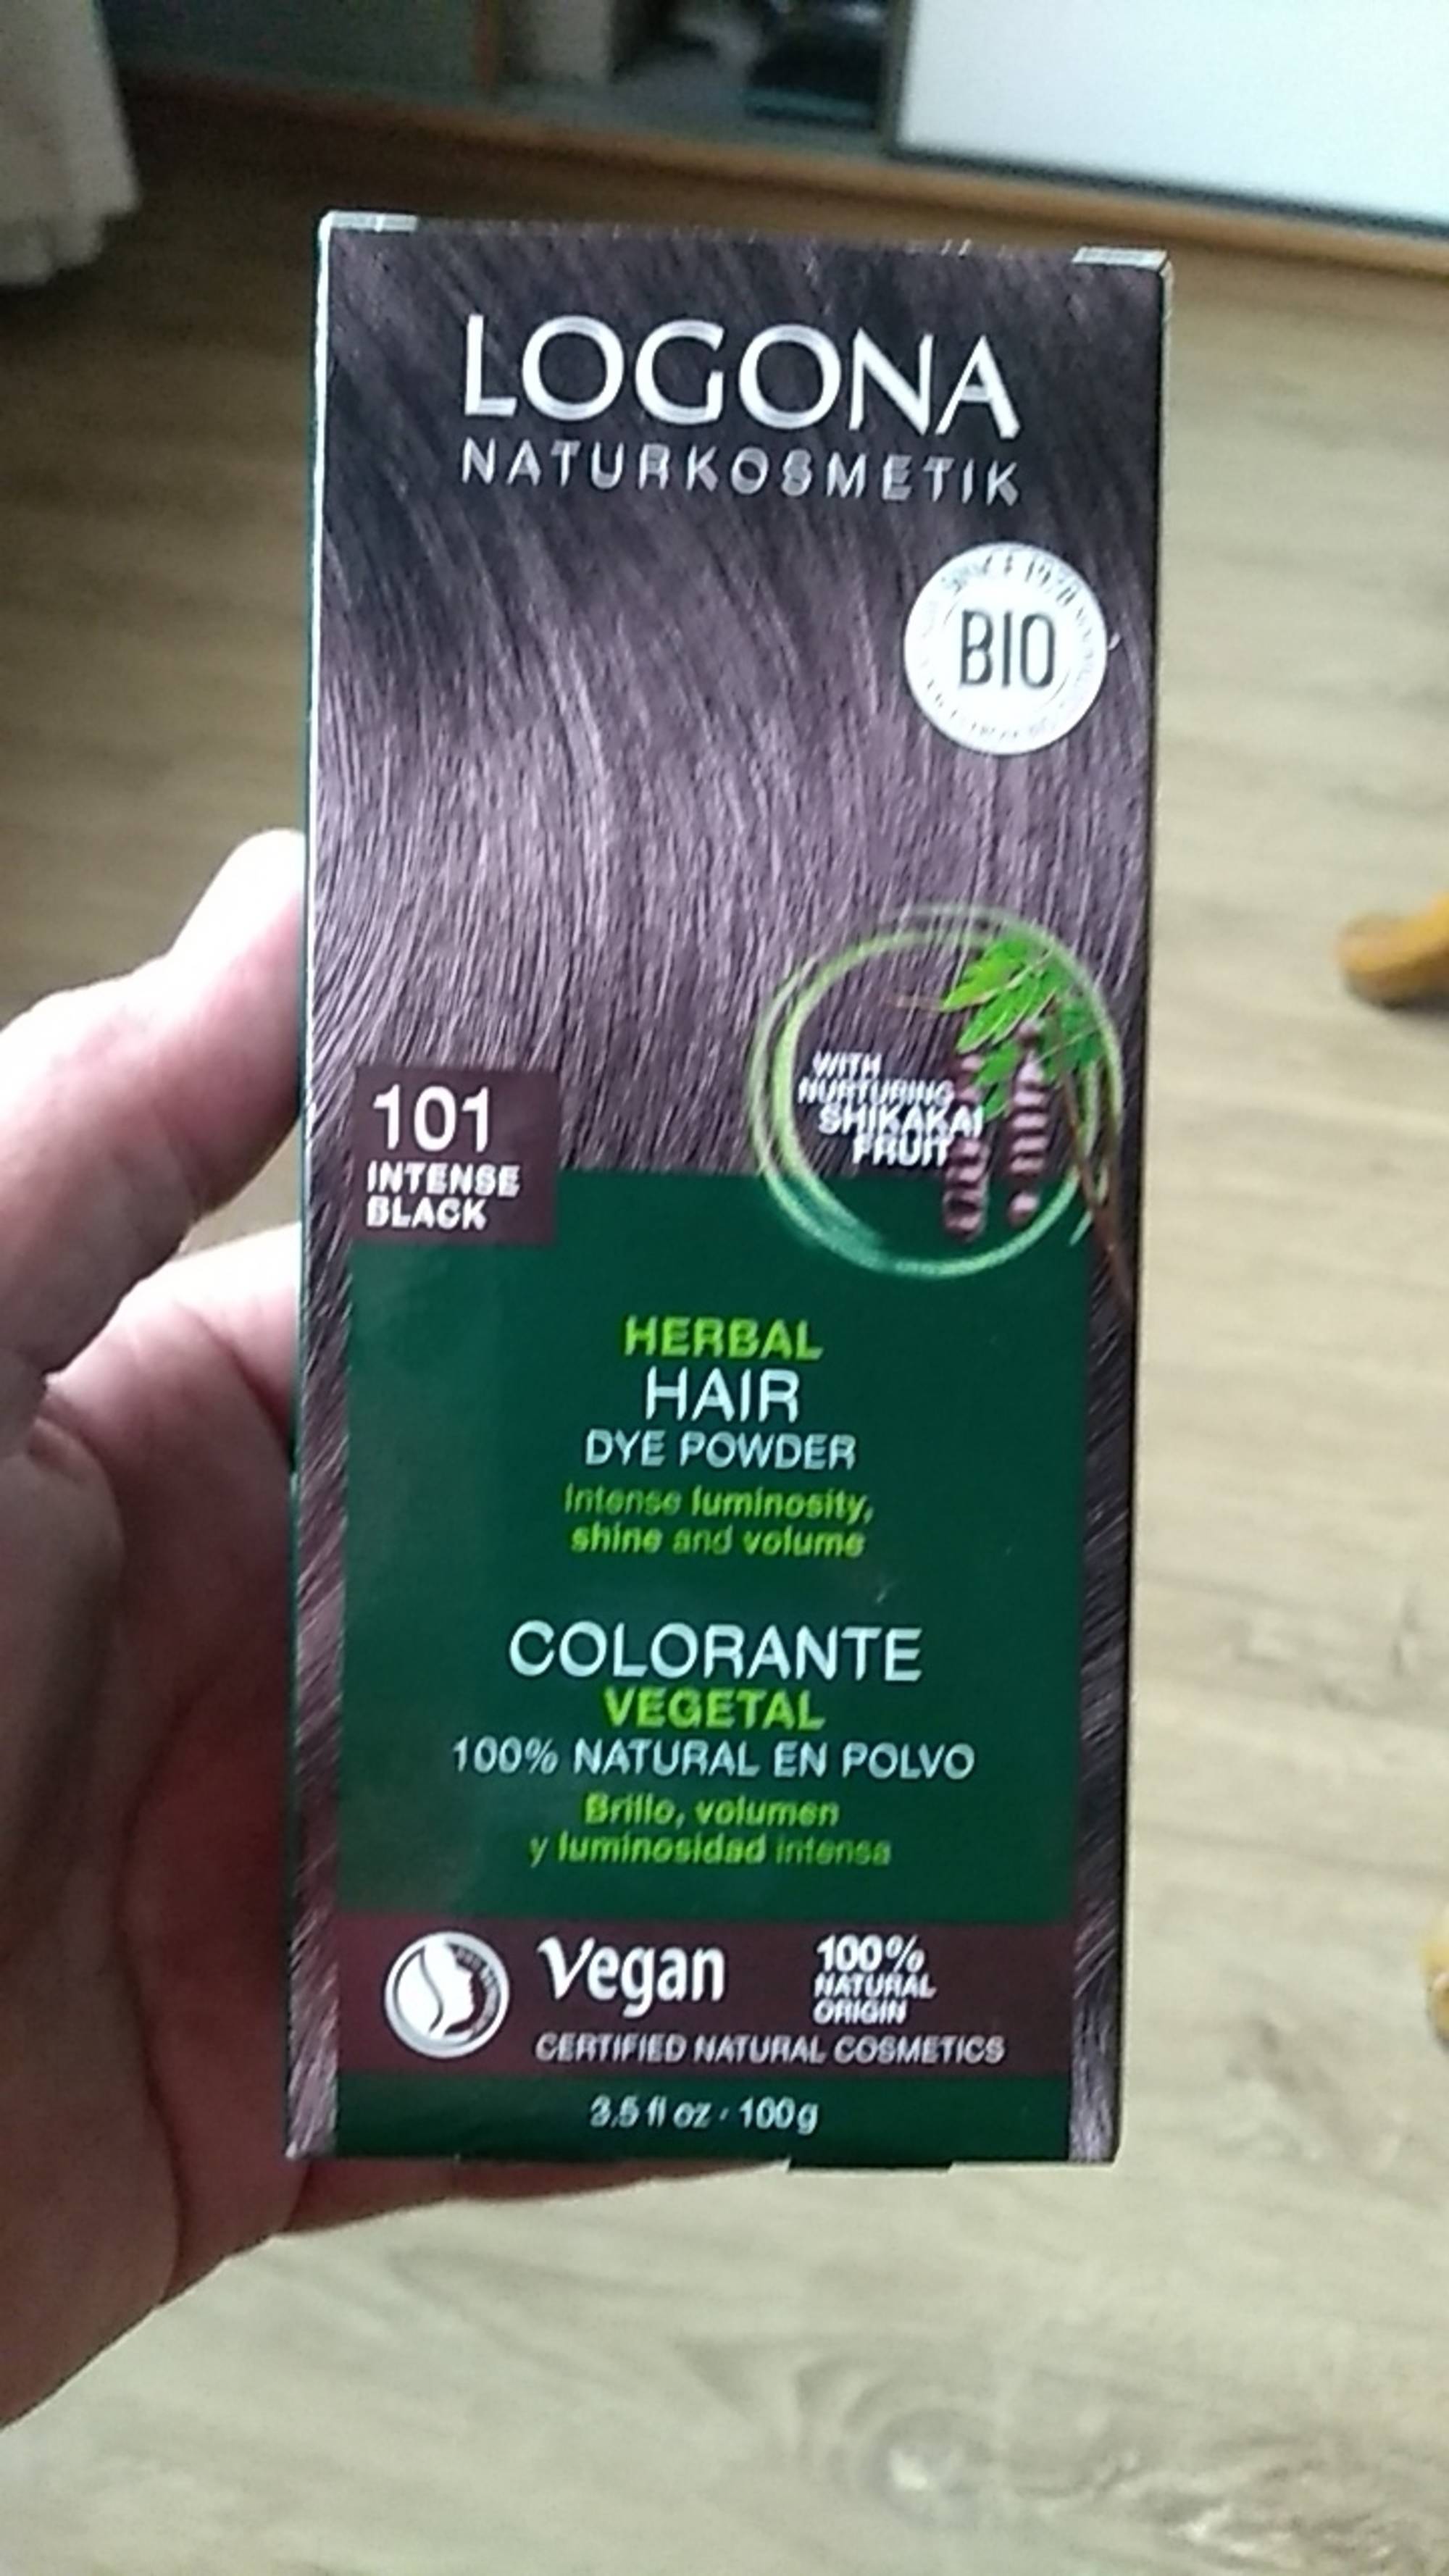 LOGONA - Herbal hair - Colorante vegetal 101 intense black